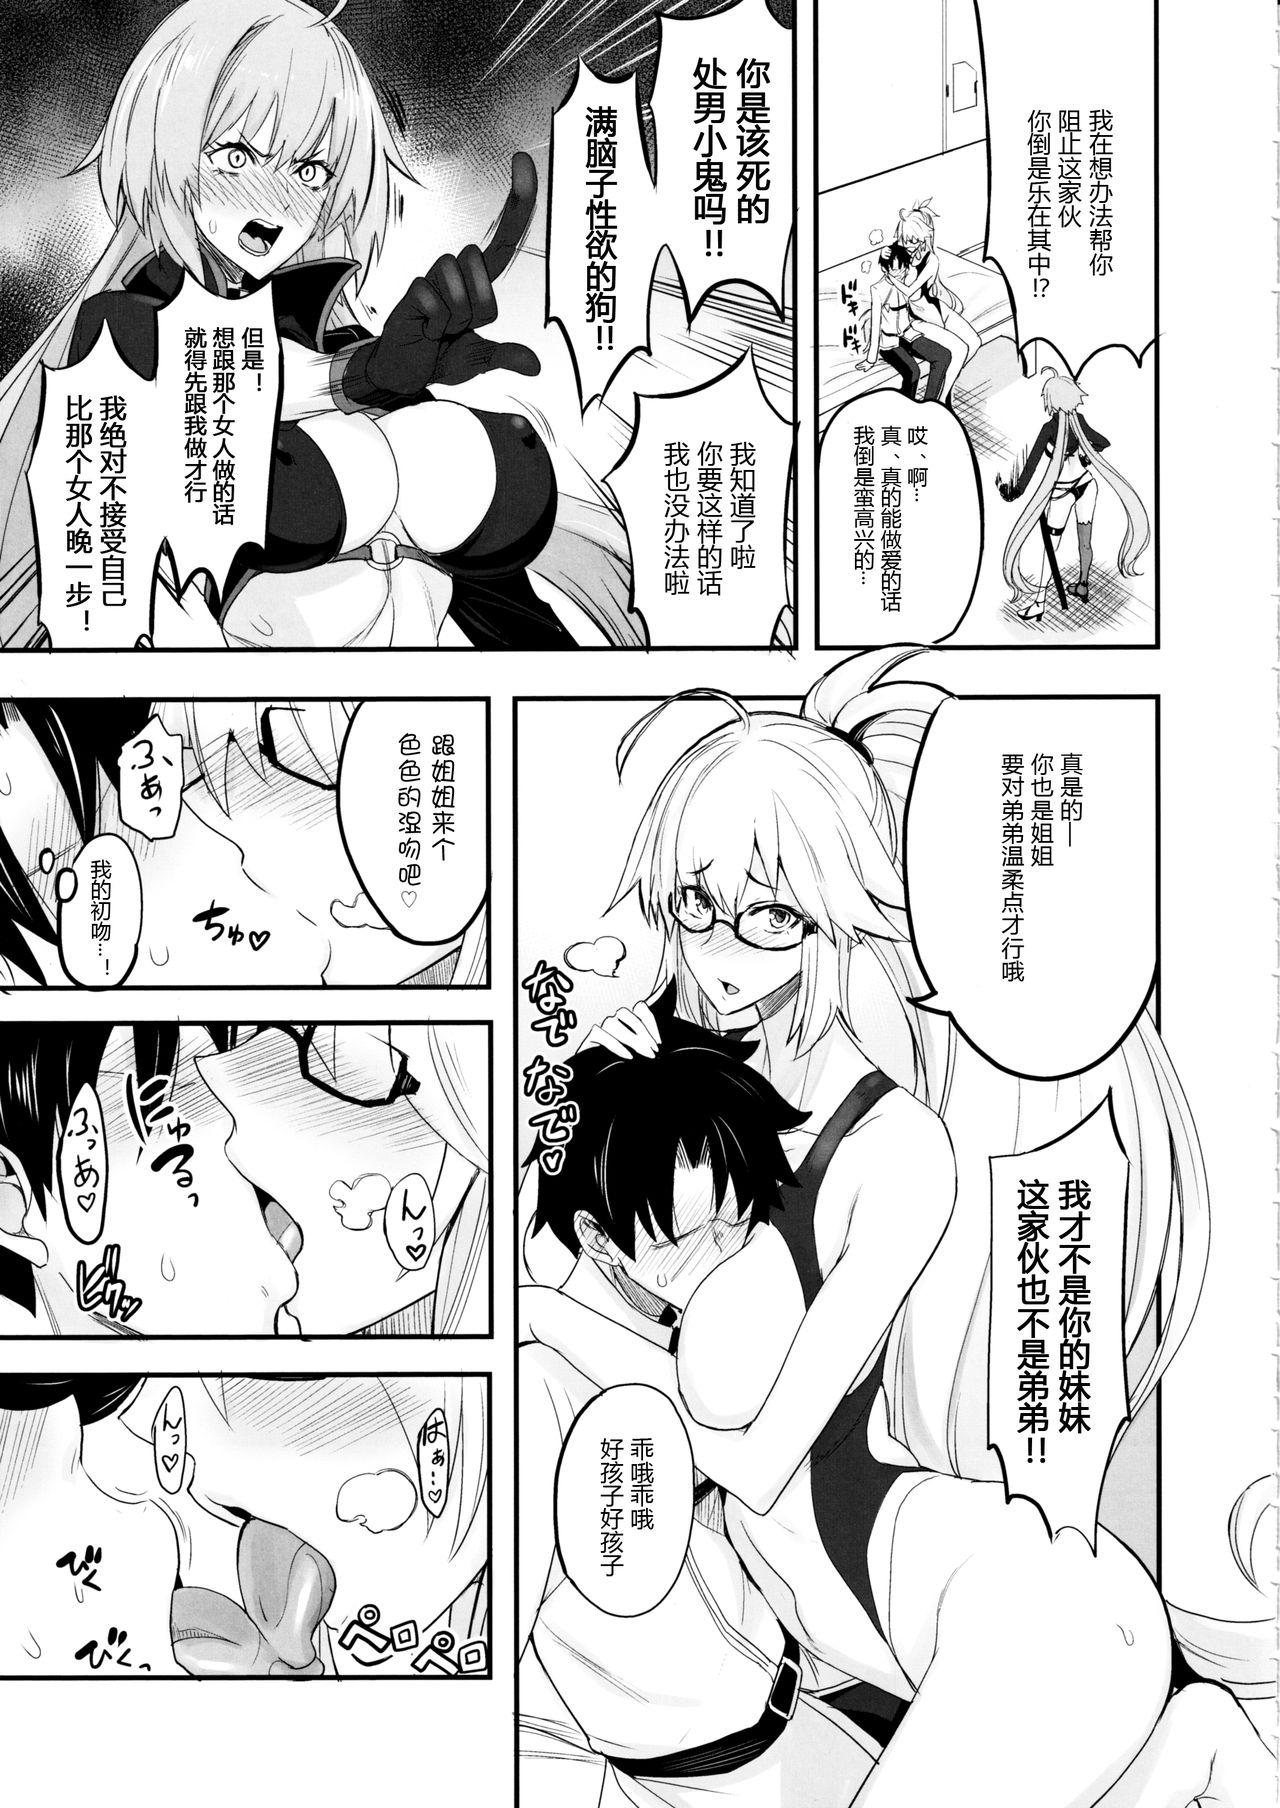 Asslick W Jeanne vs Master - Fate grand order Solo Female - Page 5